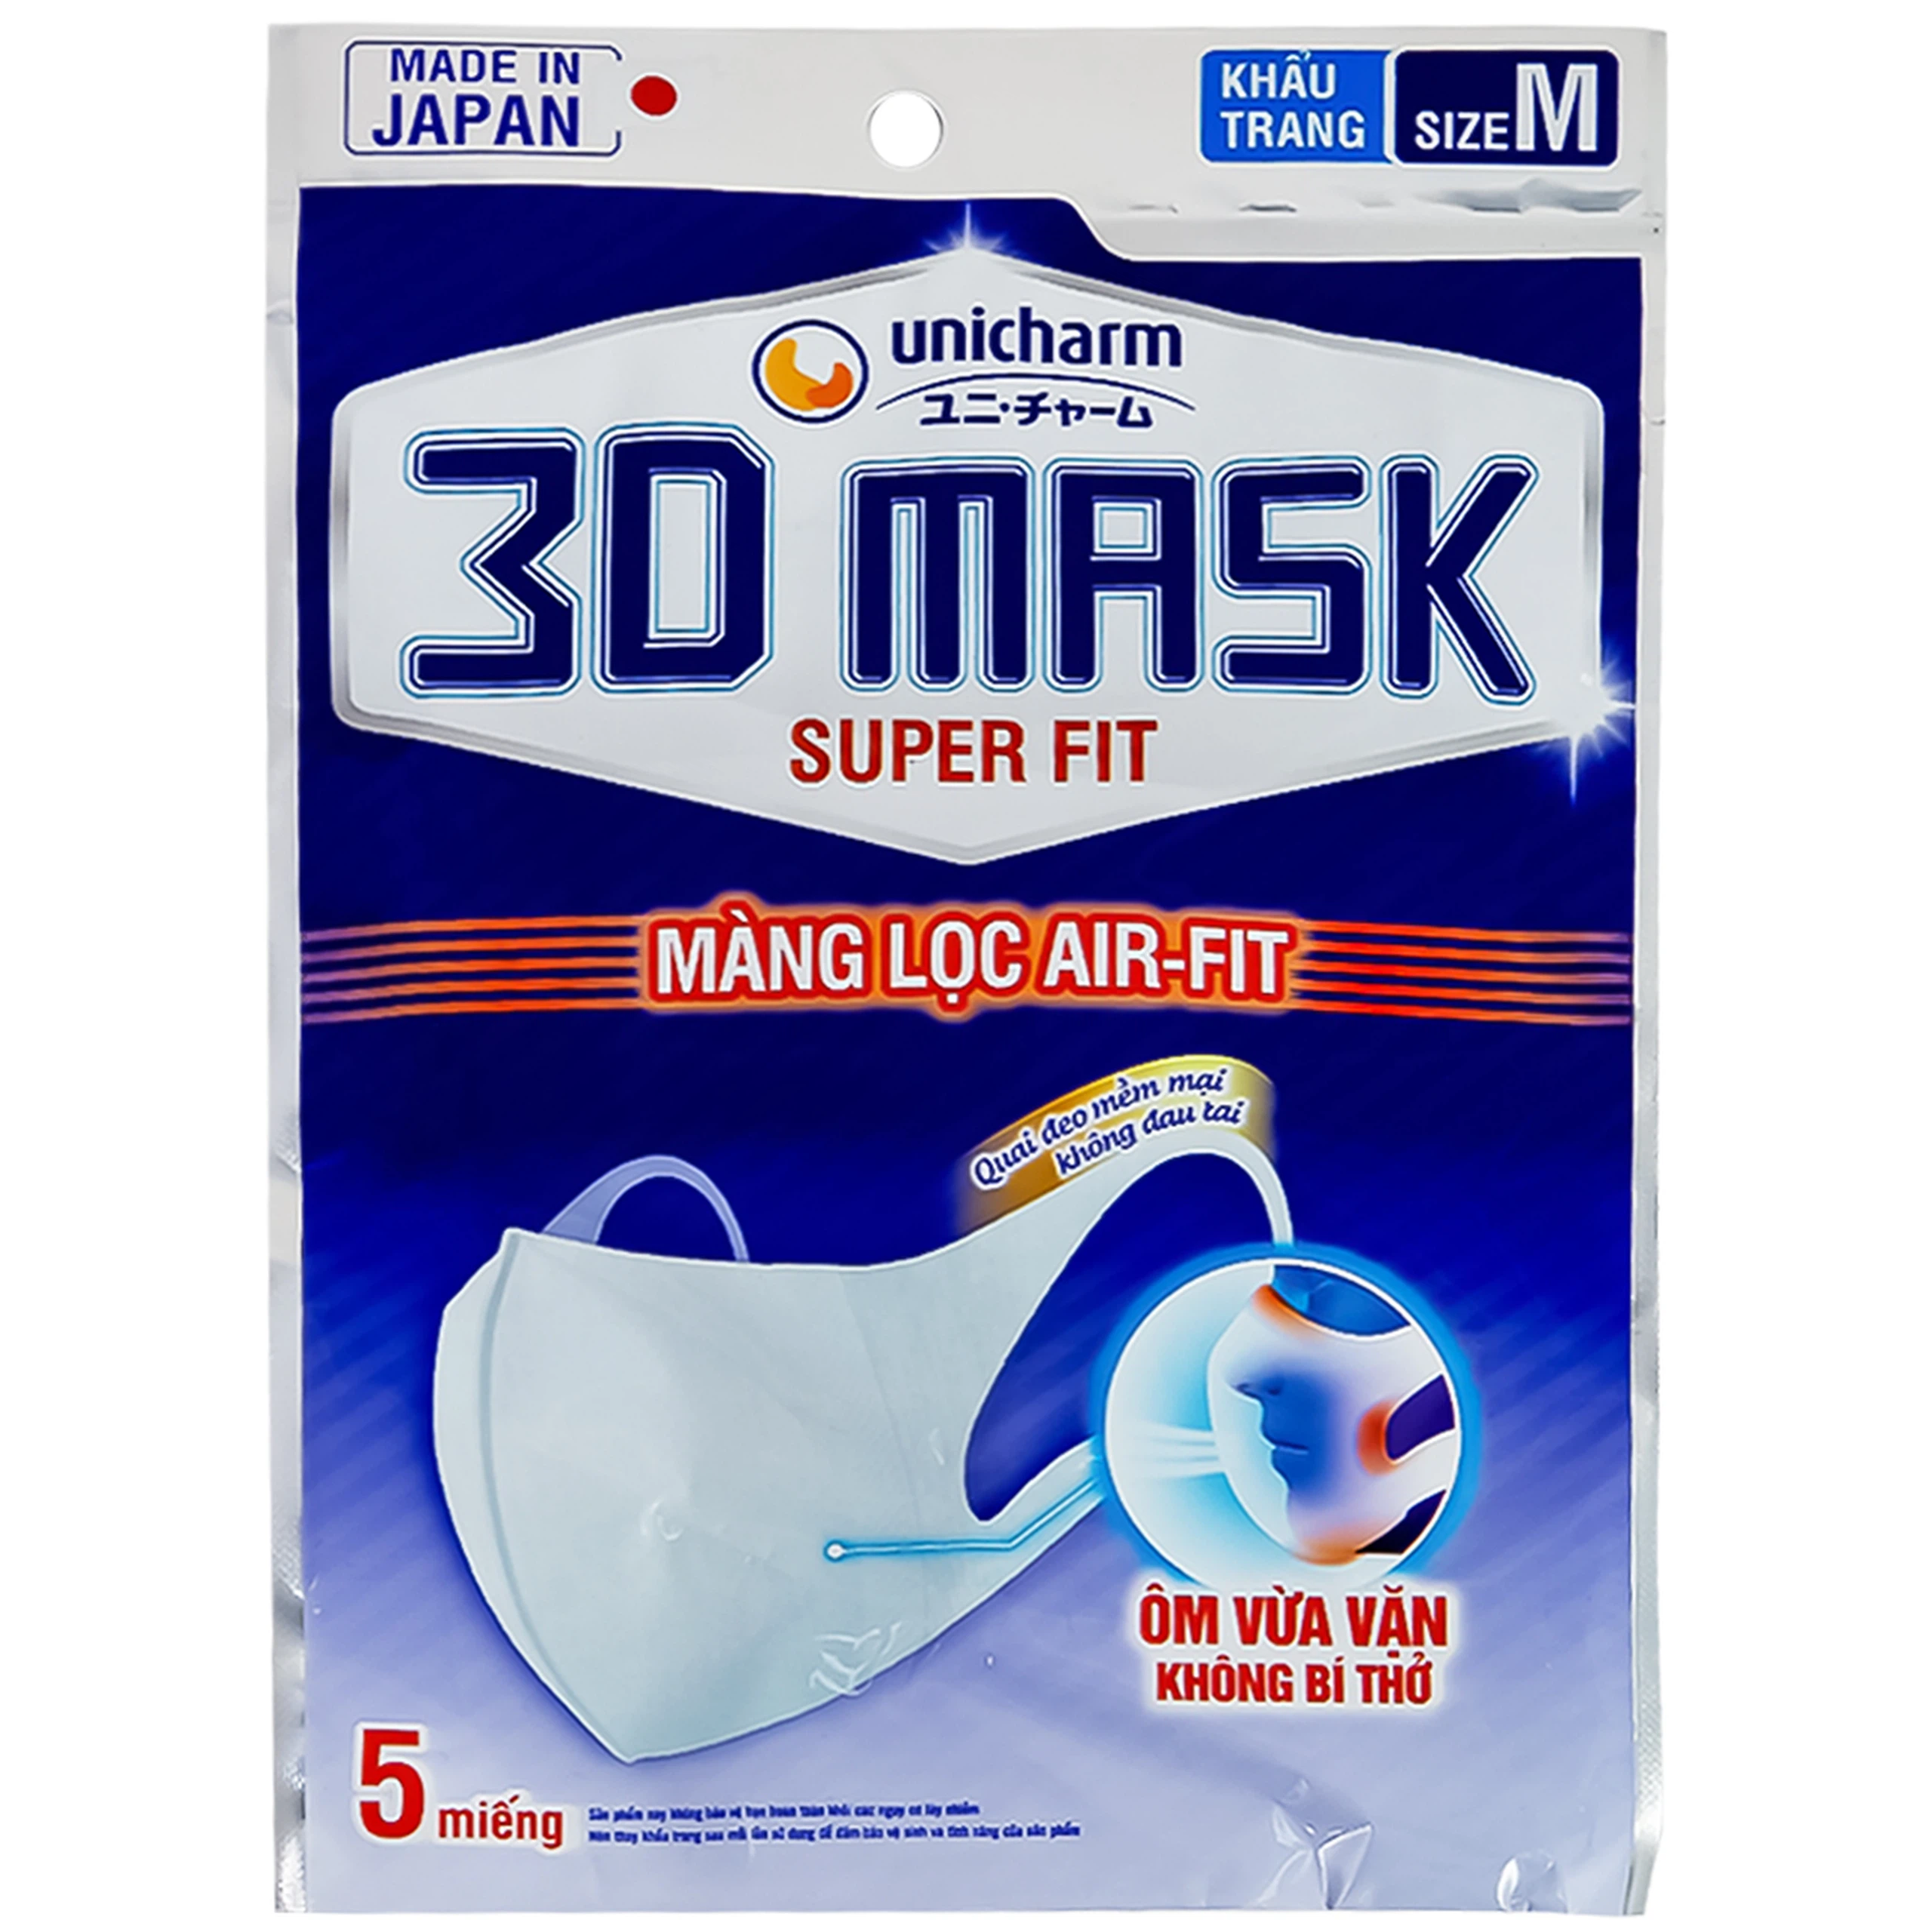 Khẩu trang y tế 3D Mask Super Fit Unicharm size M hỗ trợ ngăn khói, bụi, kháng khuẩn (5 cái)